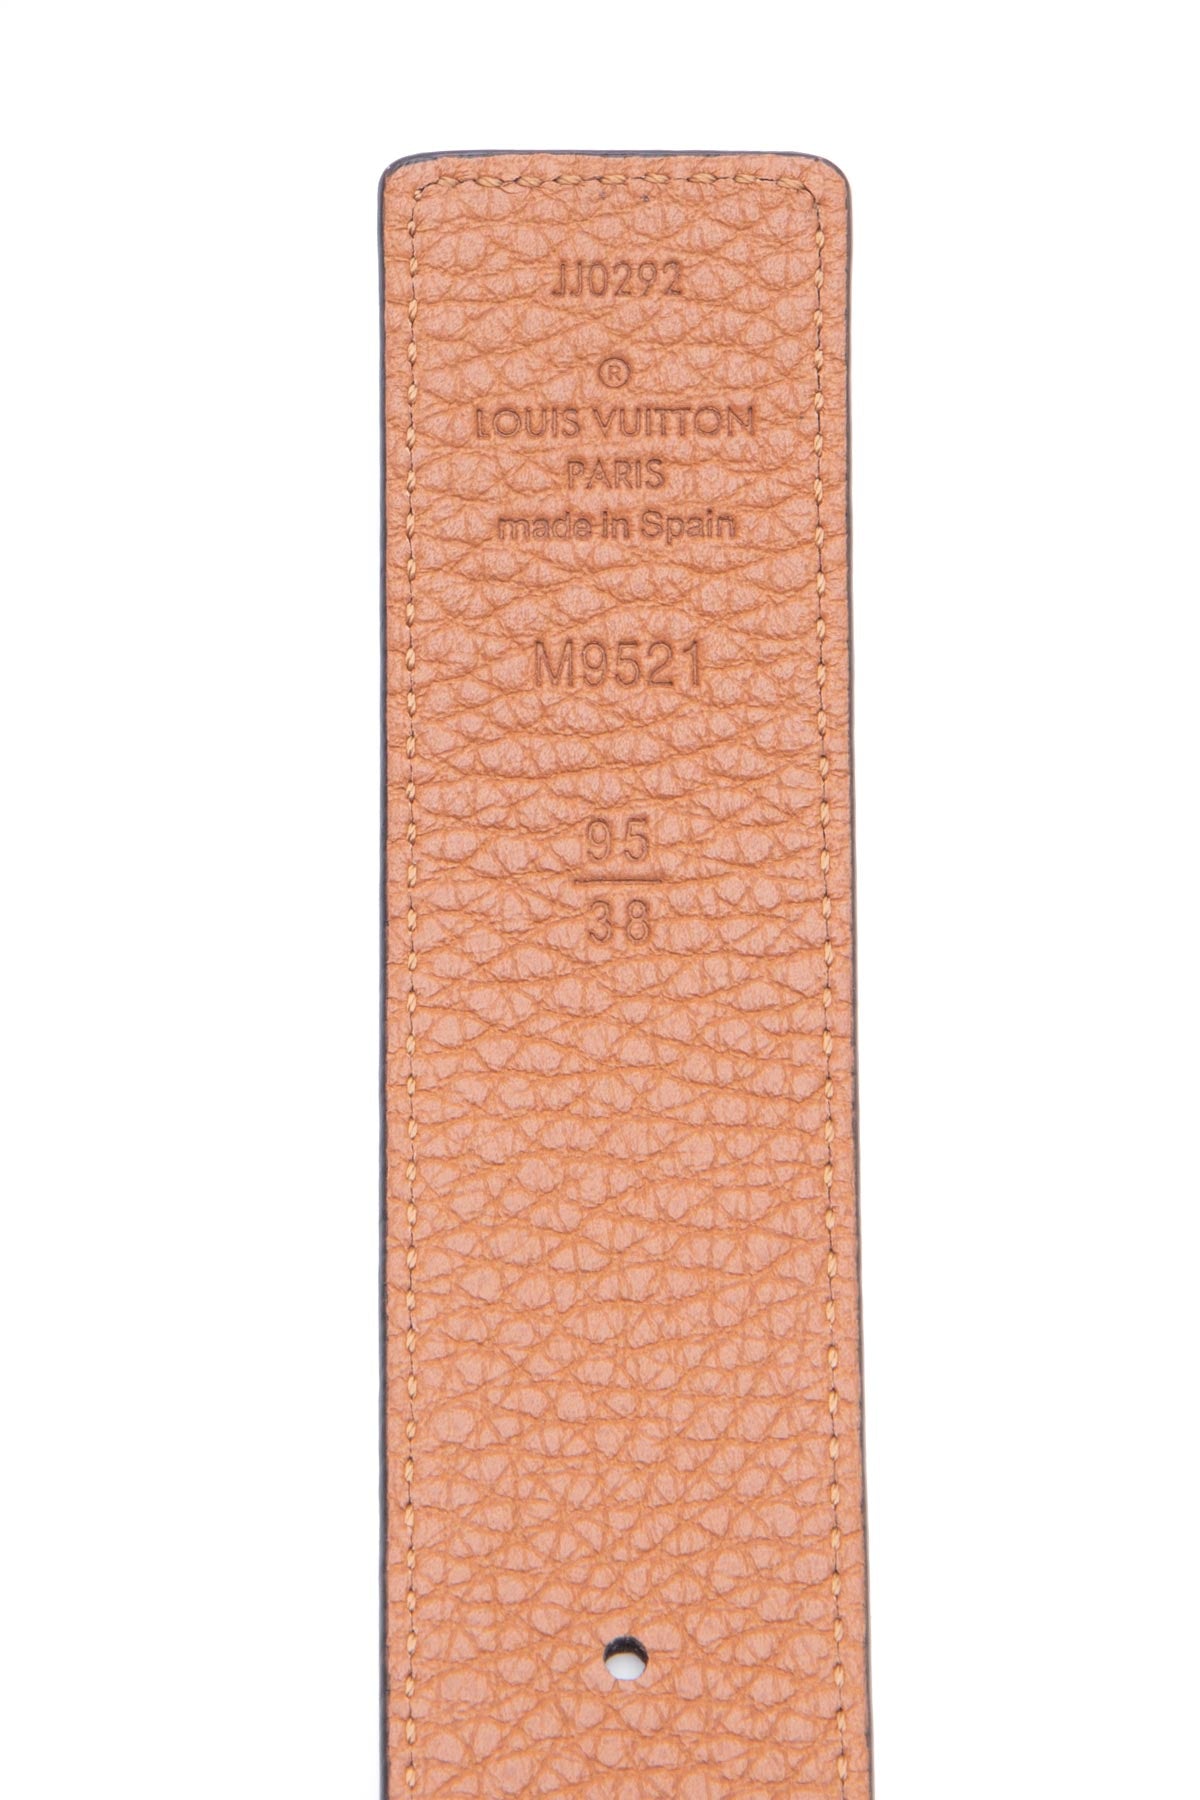 Louis Vuitton LV Initiales 30mm Reversible Belt Rose Poudre + Calf Leather. Size 80 cm